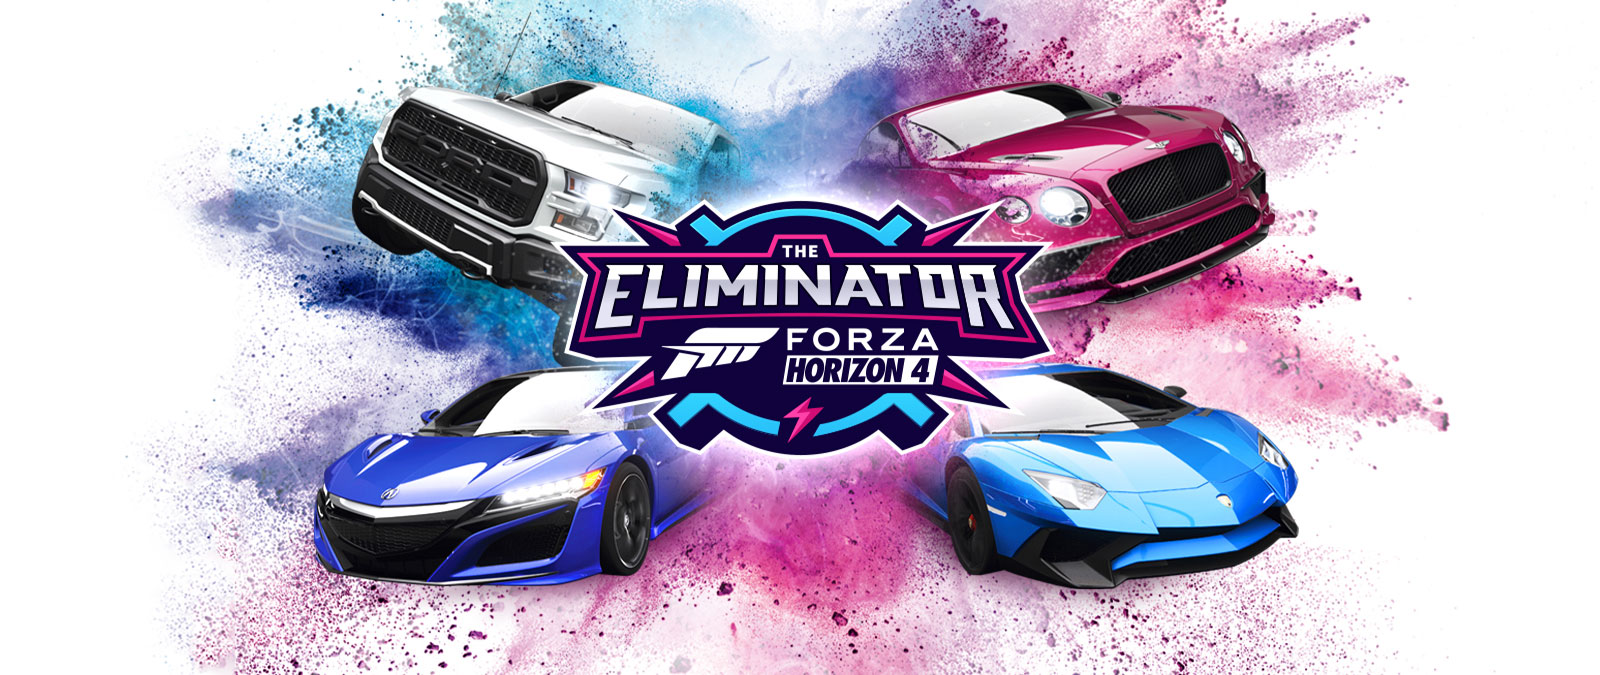 Der Eliminator, Forza Horizon 4-Logo, vier Autos mit blauem und rosa Pulver um sie herum